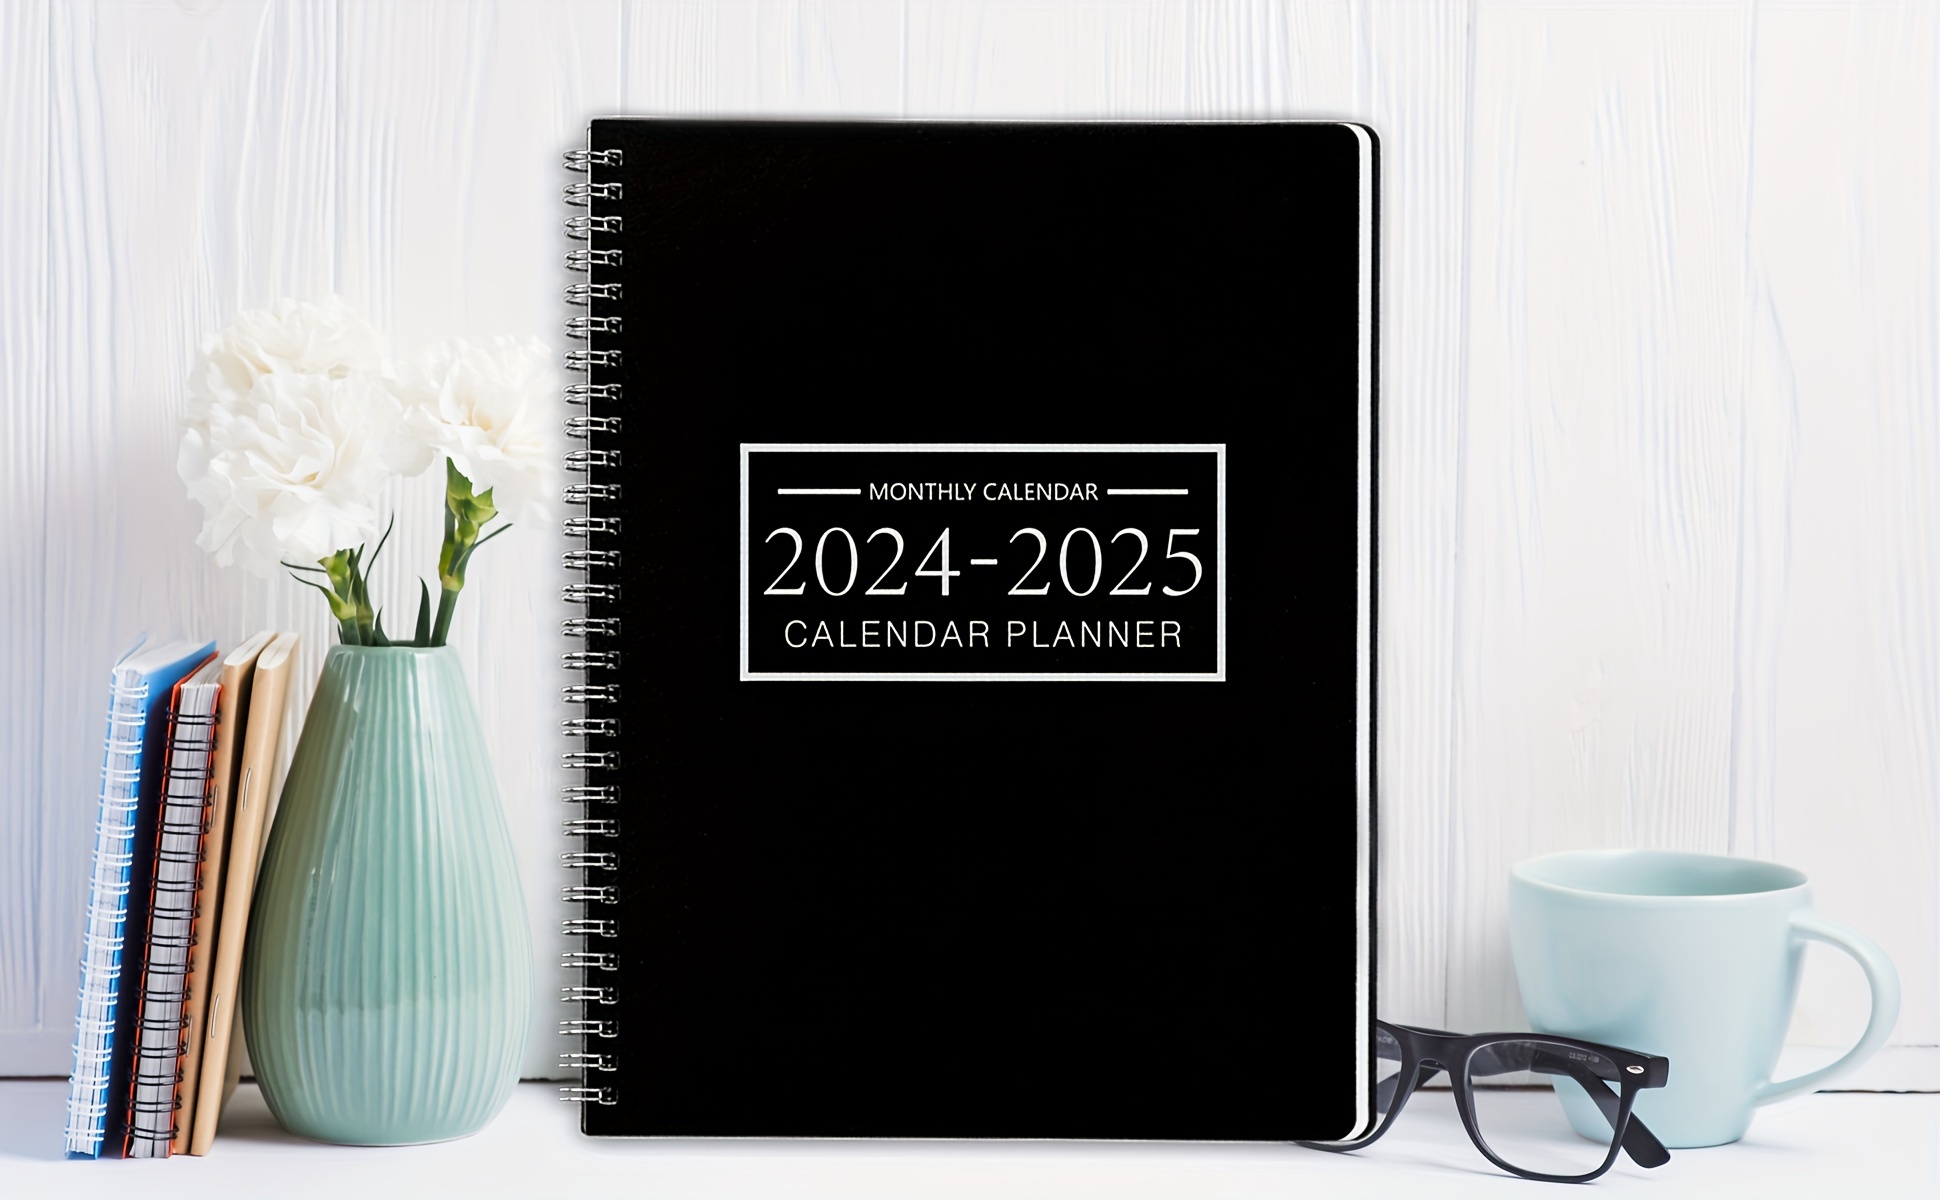 Calendrier de Poche 2024-2025 - Carnet d'Organisation Mensuel sur 2 Ans:  Planification Efficace, Suivi de Progrès et Inspirations Quotidiennes  (French